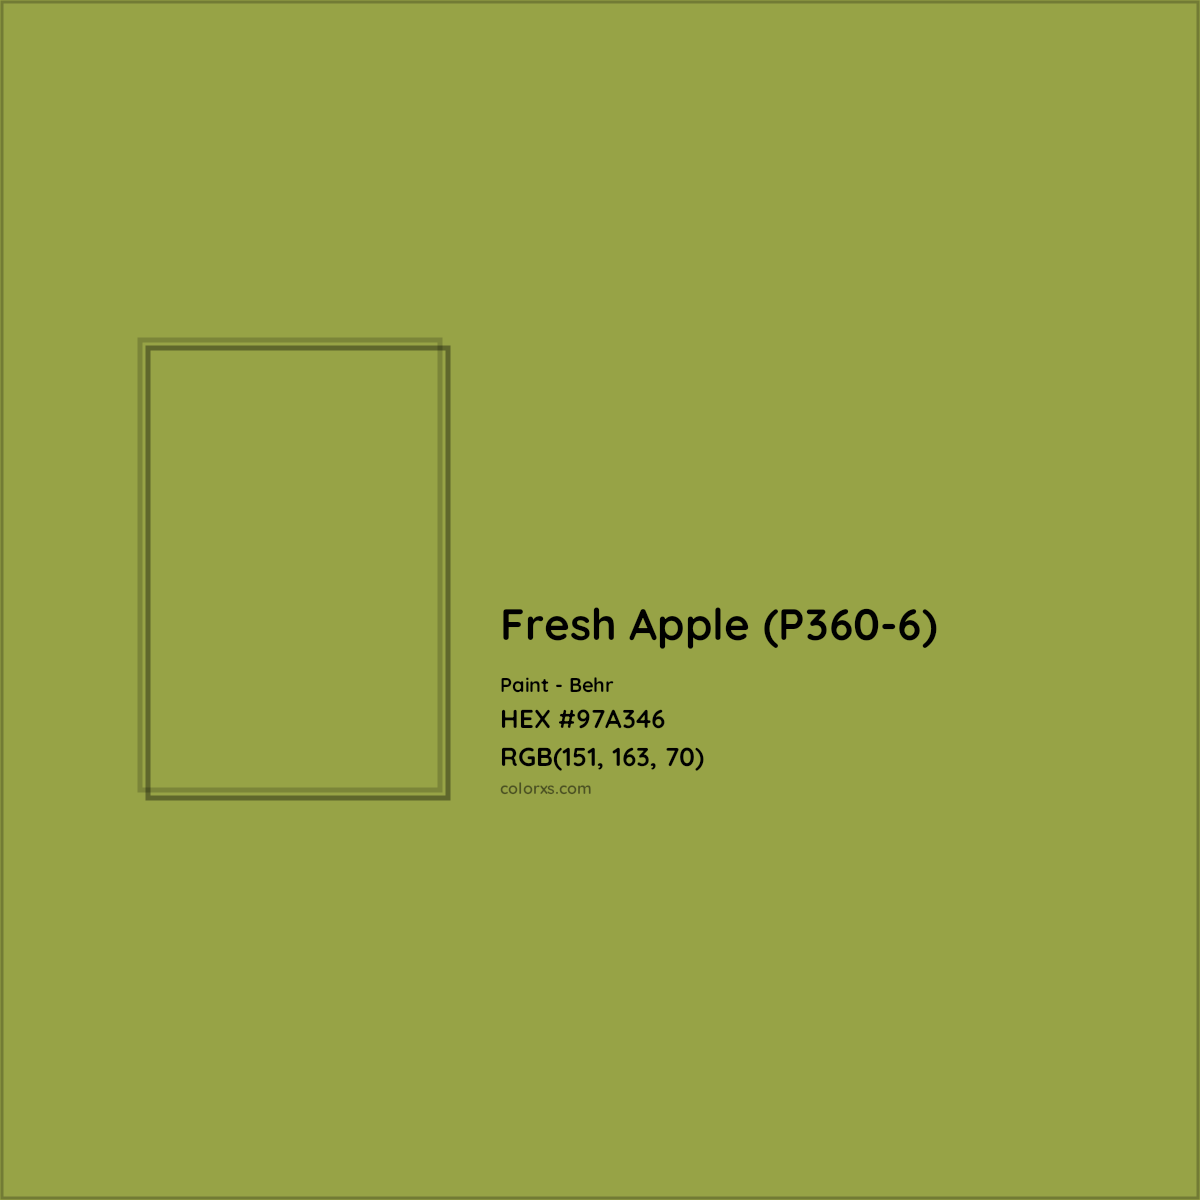 HEX #97A346 Fresh Apple (P360-6) Paint Behr - Color Code